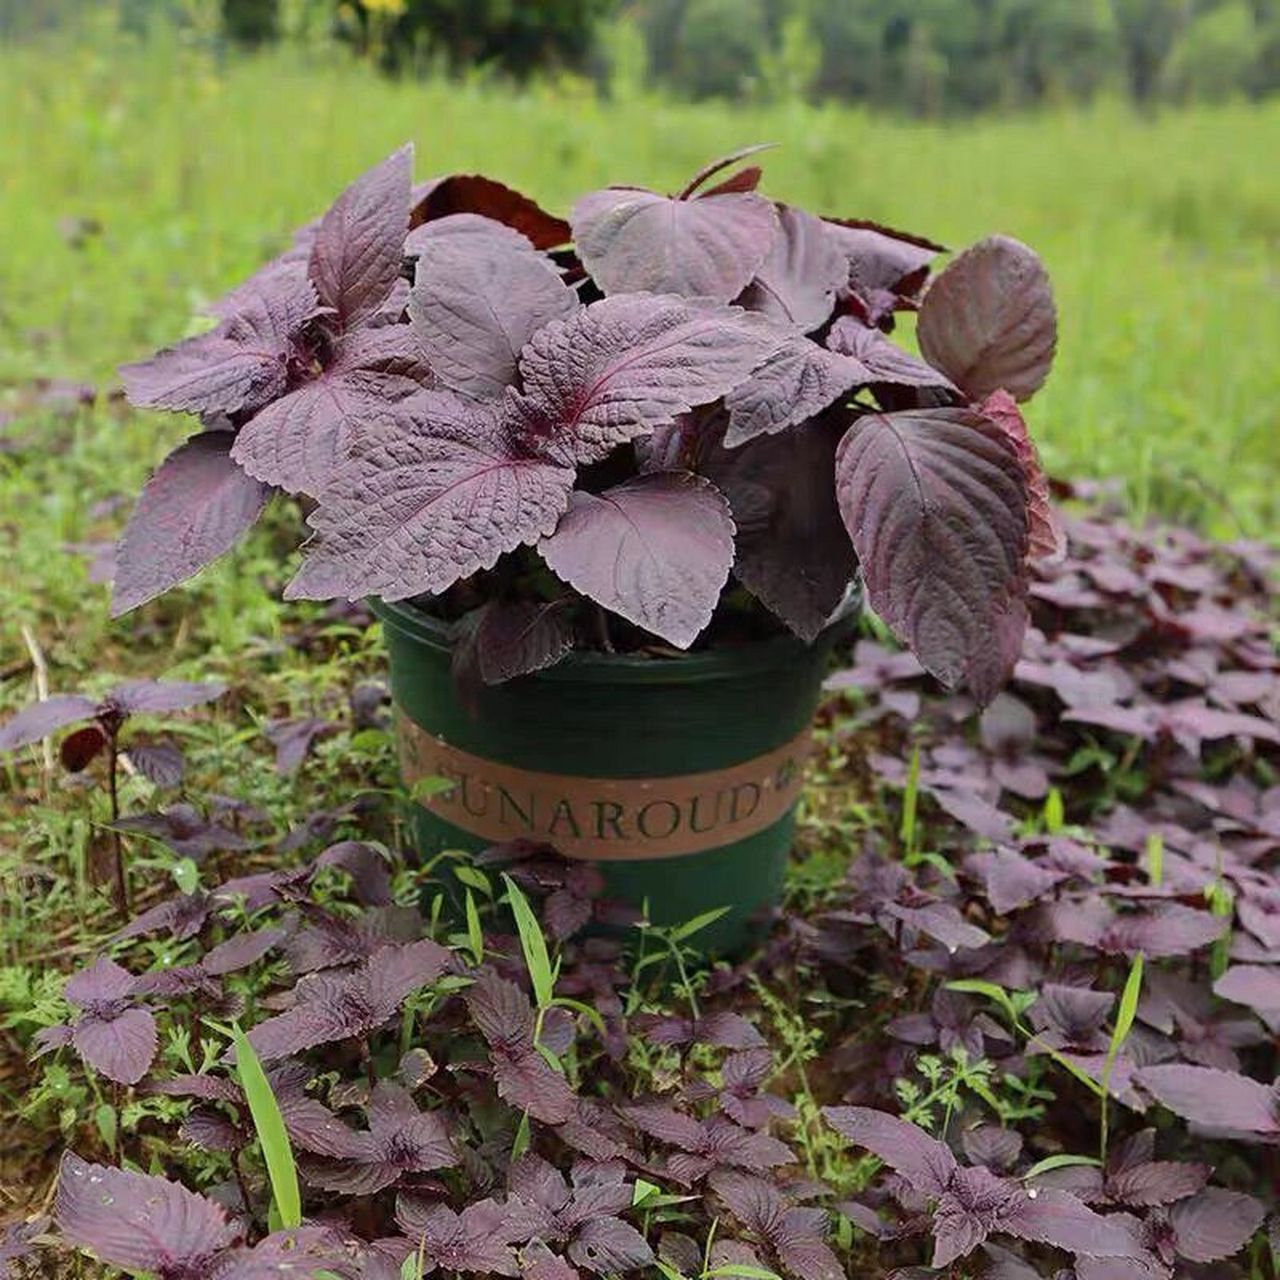 与紫苏相似的植物图片